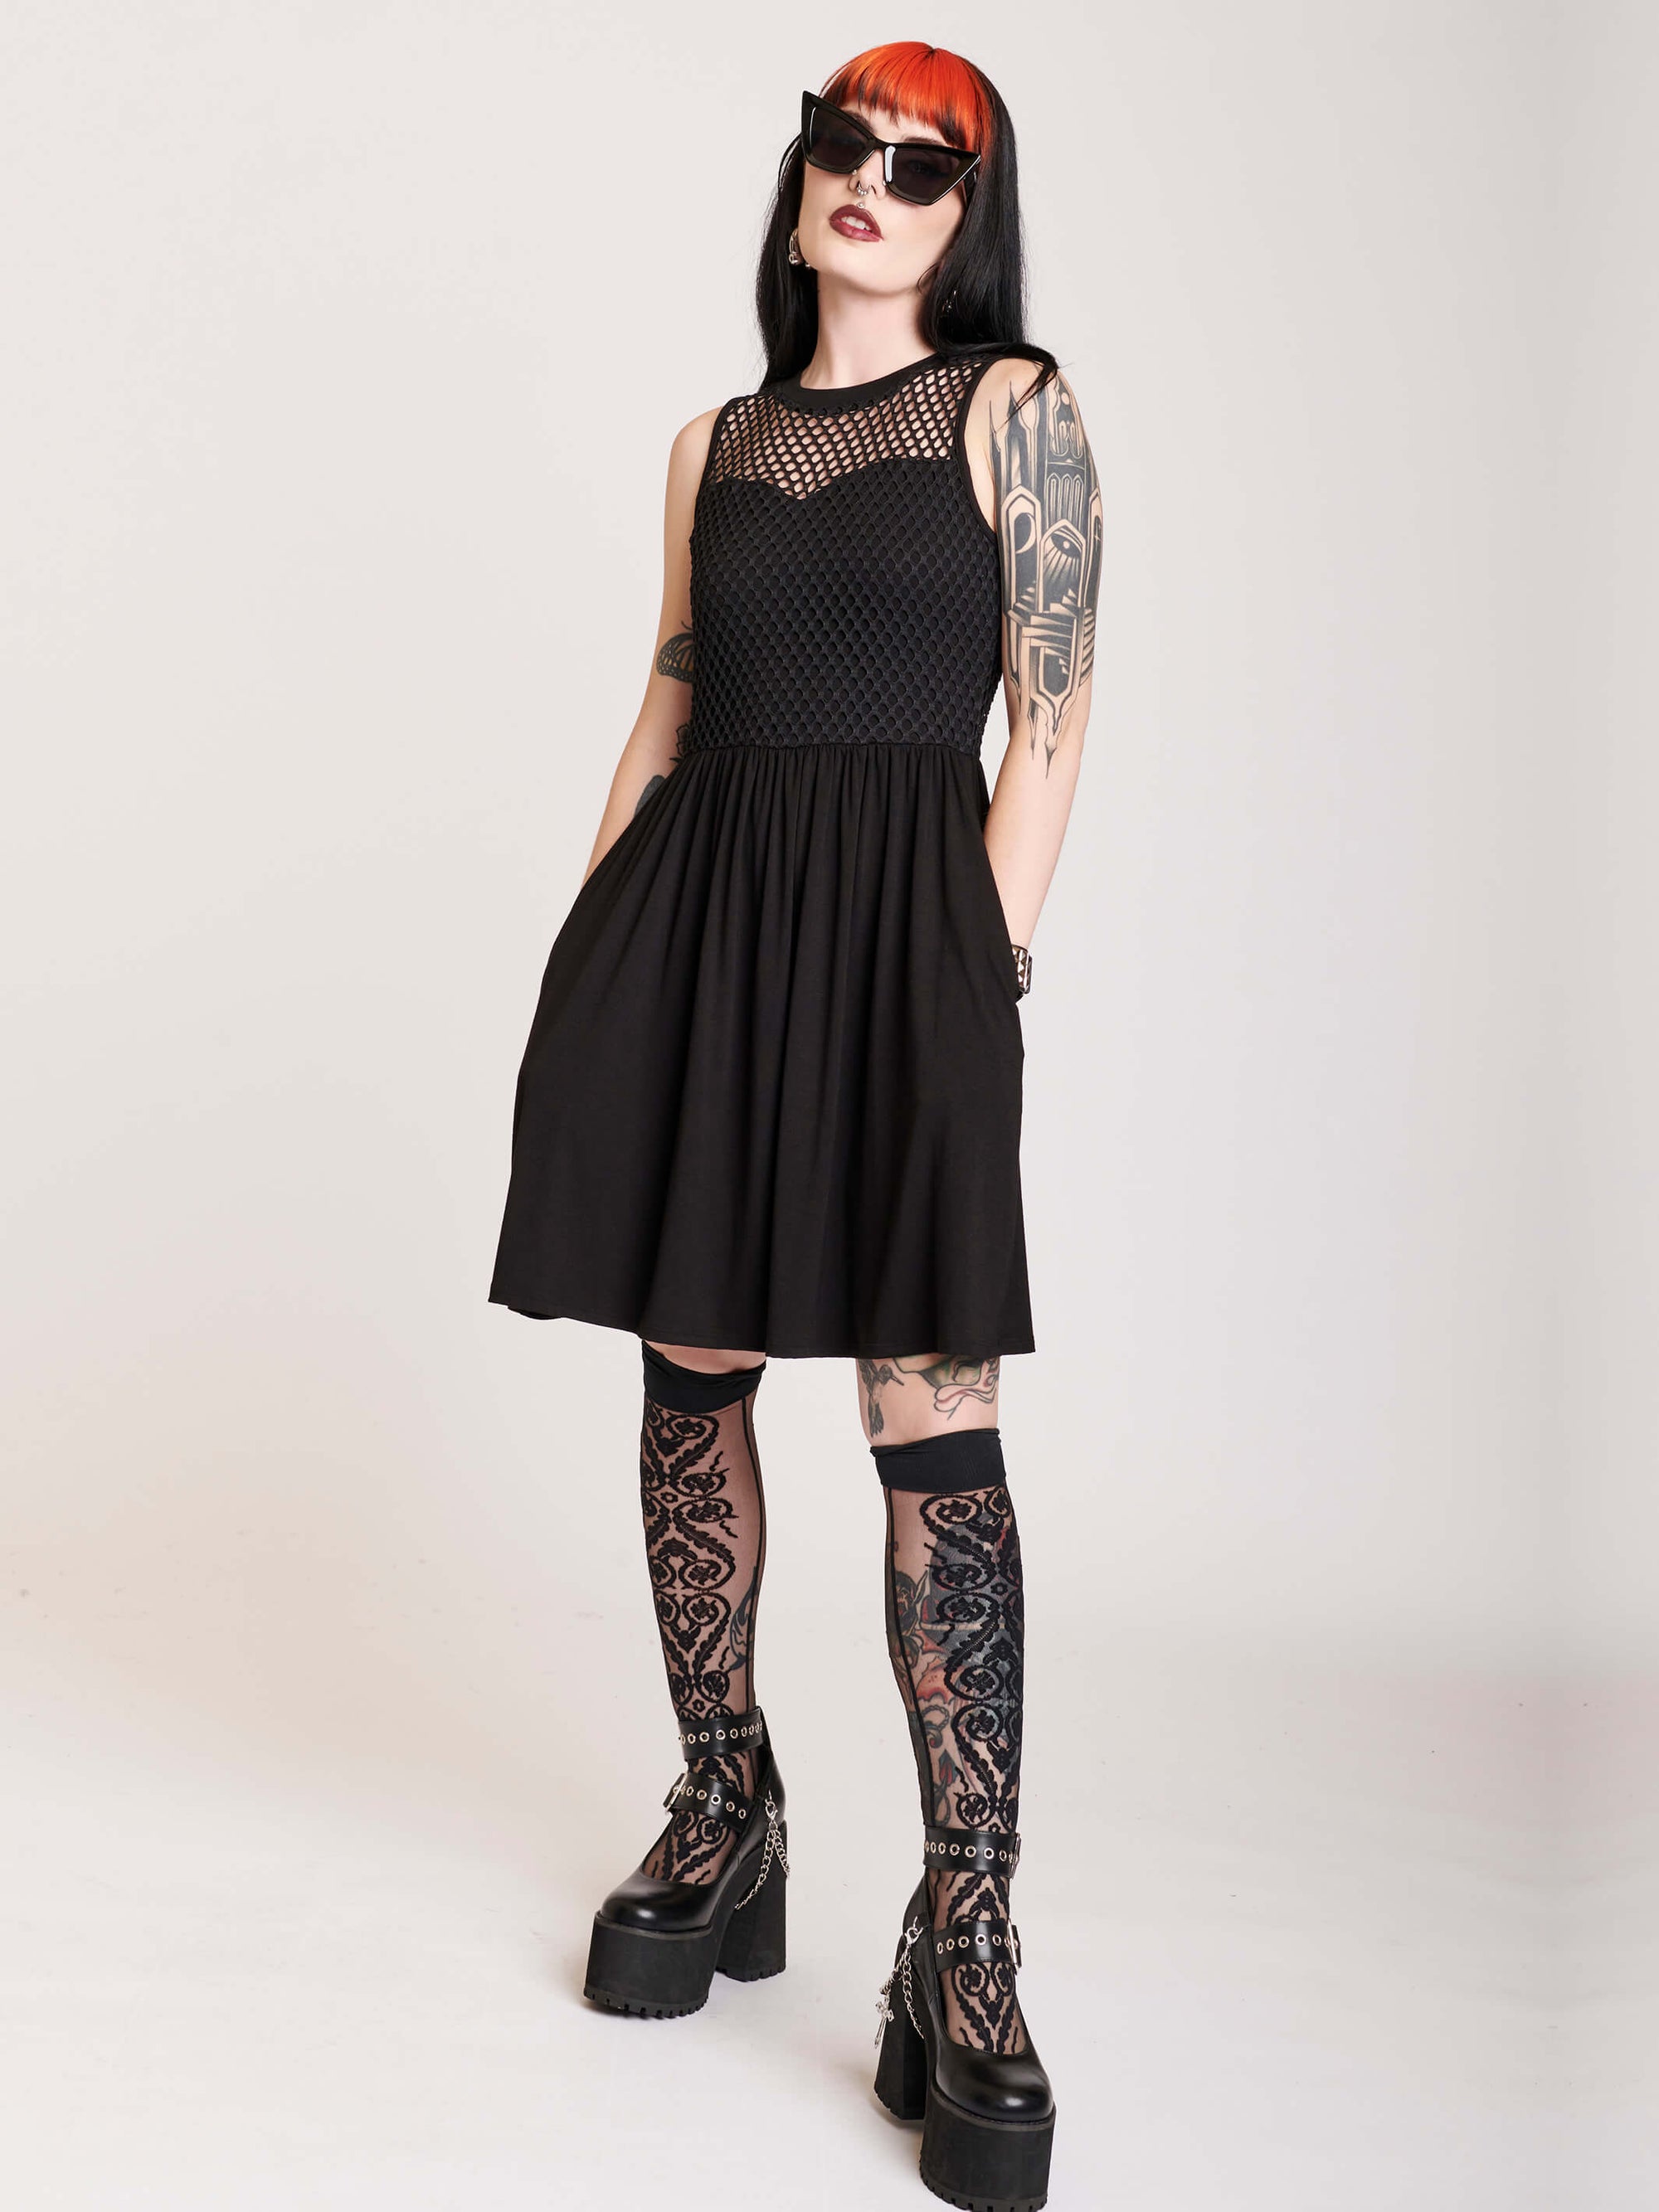 fishnet black dress